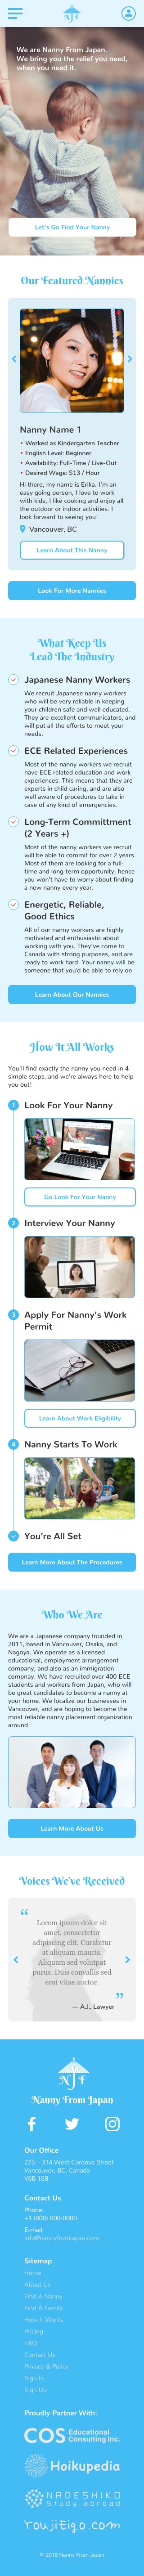 Nanny From Japan Website Mobile Design Mockup - Home